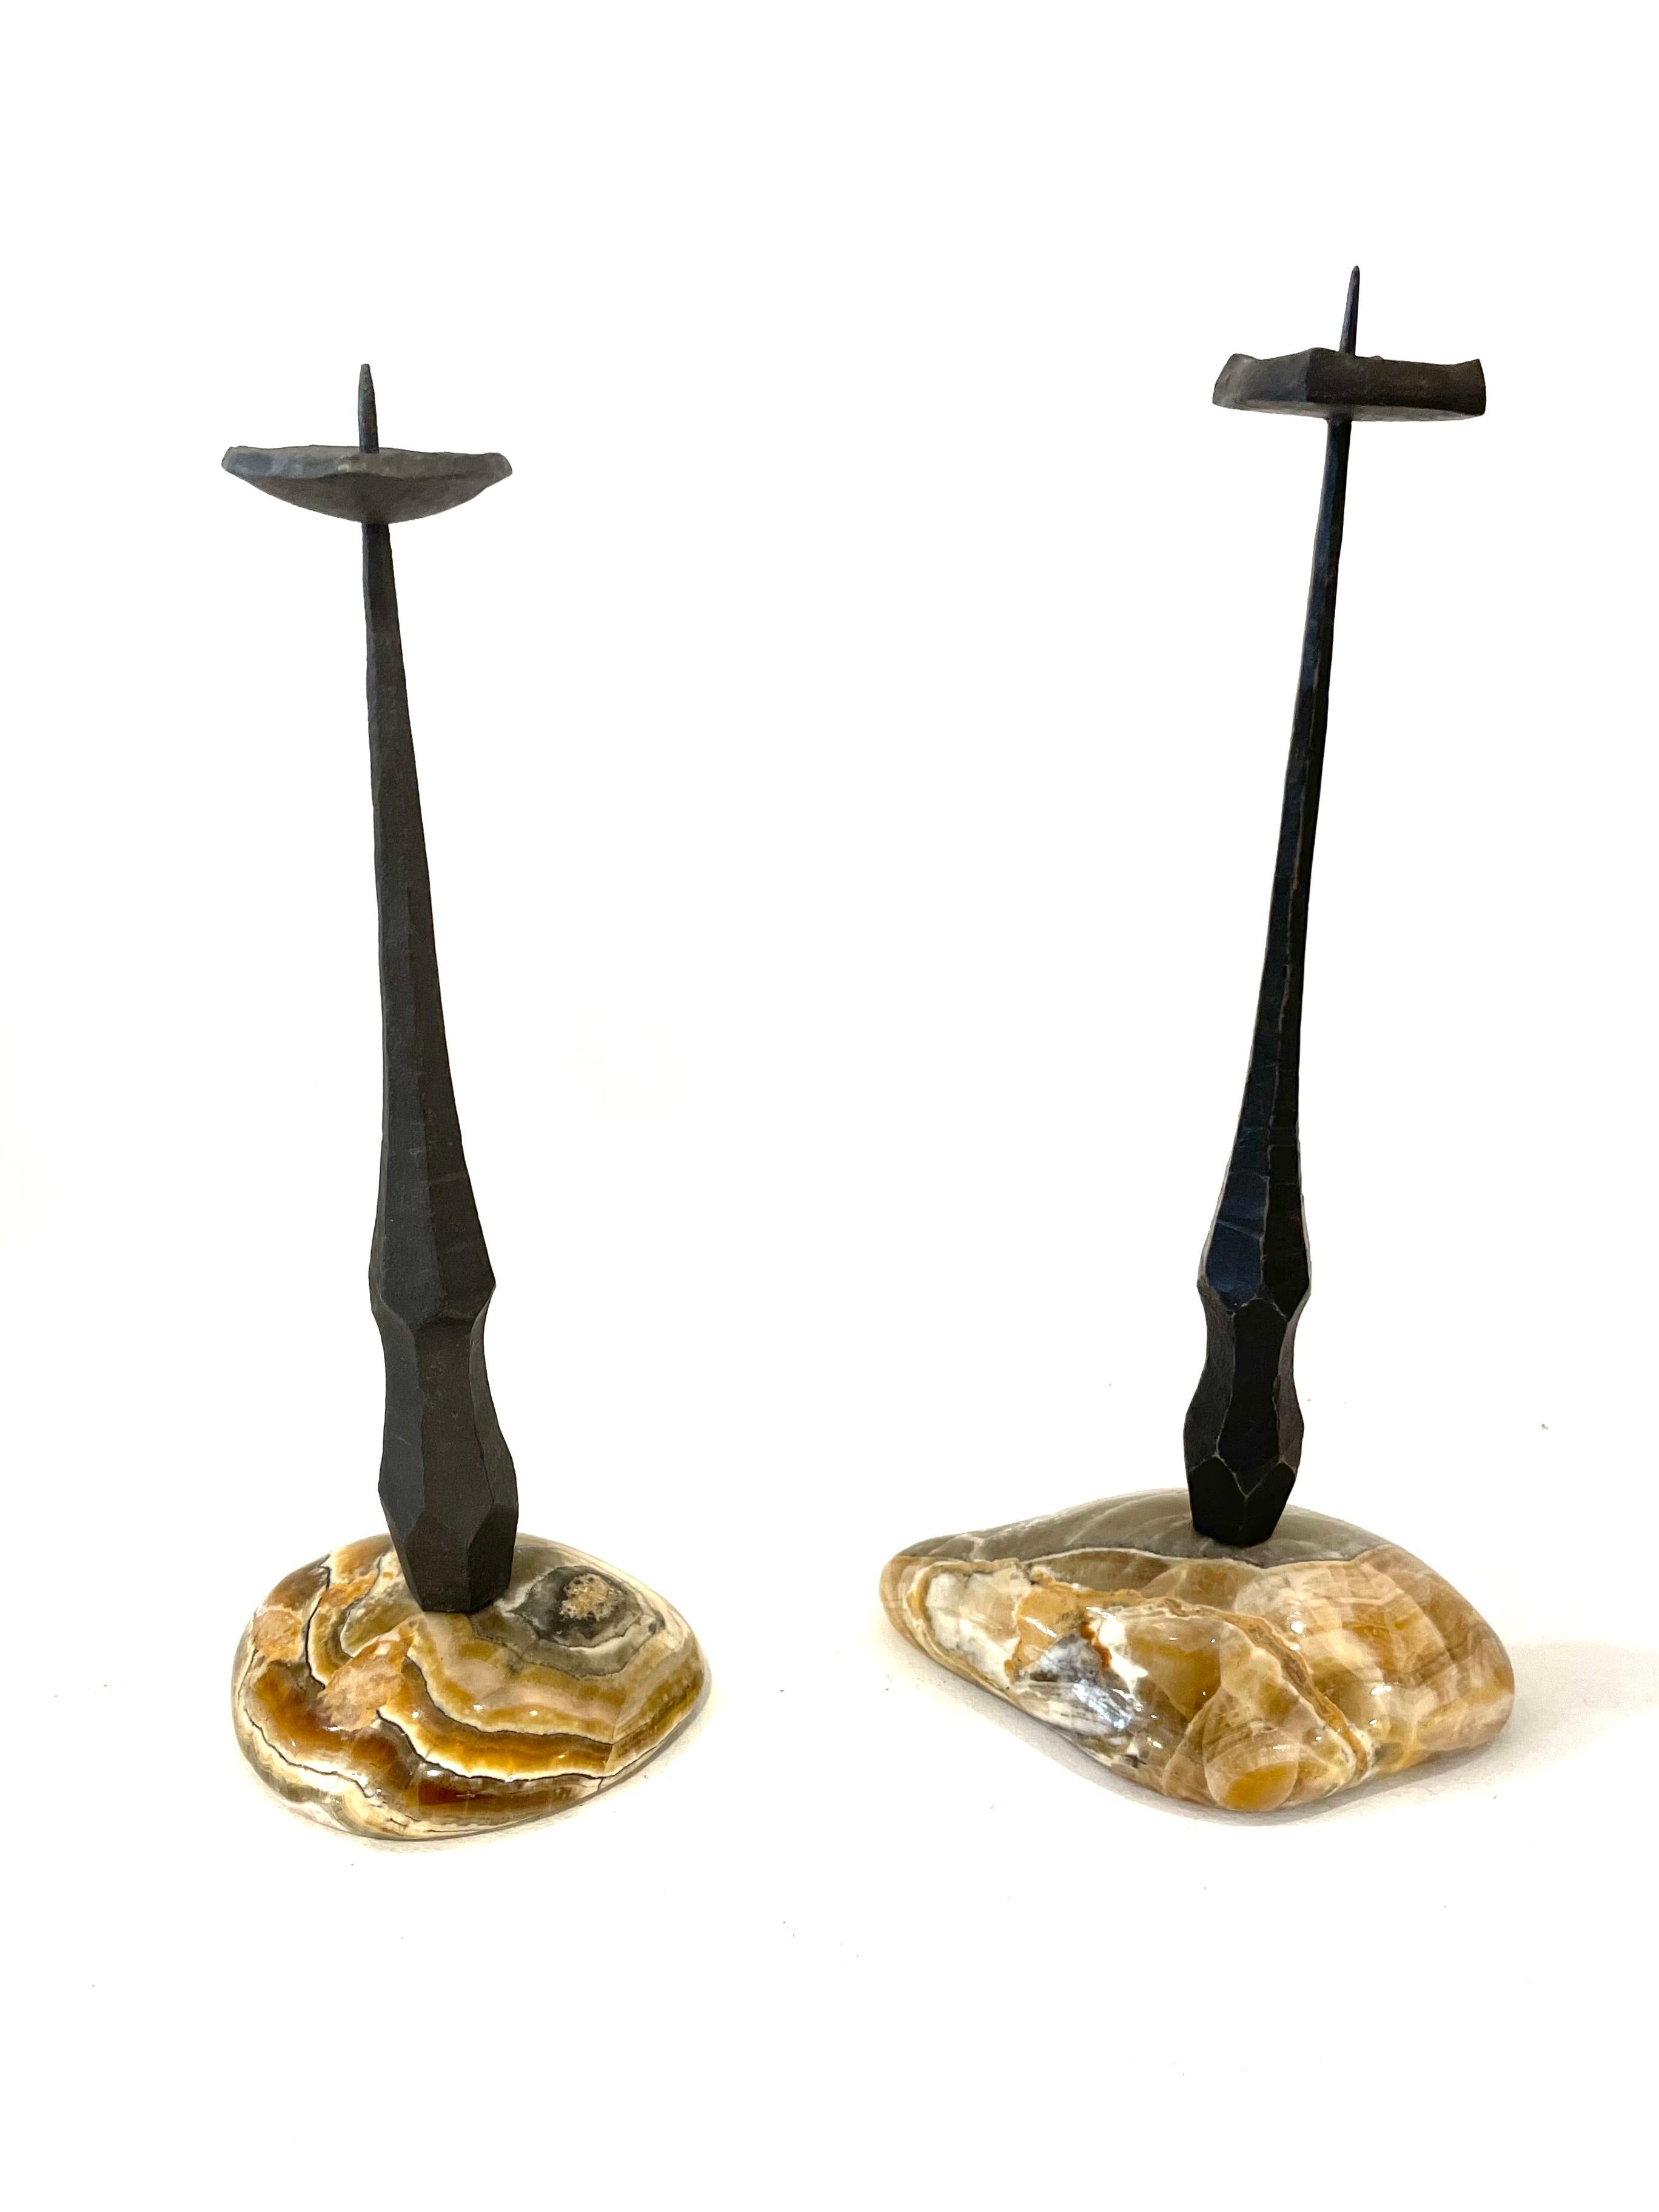 Ein Paar brutalistischer Kerzenständer des Künstlers David Palombo. Die beiden Kerzenständer sind aus Eisenstäben gefertigt und unterscheiden sich leicht voneinander, beide haben scharf spitze Enden und stehen auf schönen Marmorsockeln. 

David